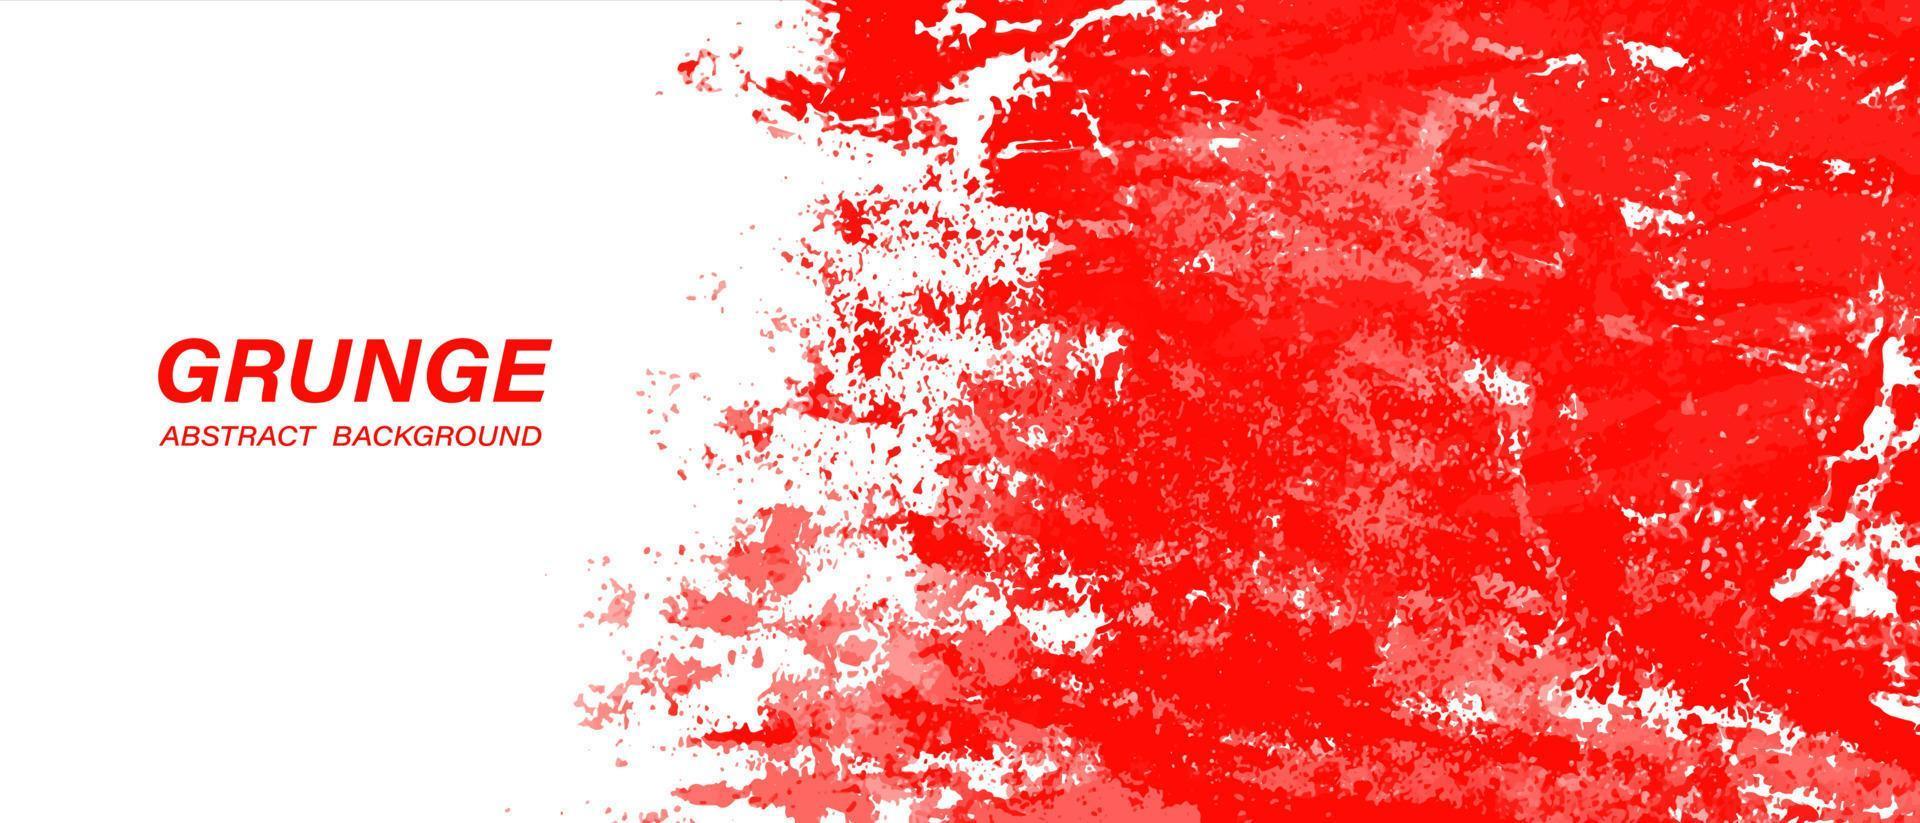 fundo de textura de tinta grunge abstrato vermelho e branco vetor